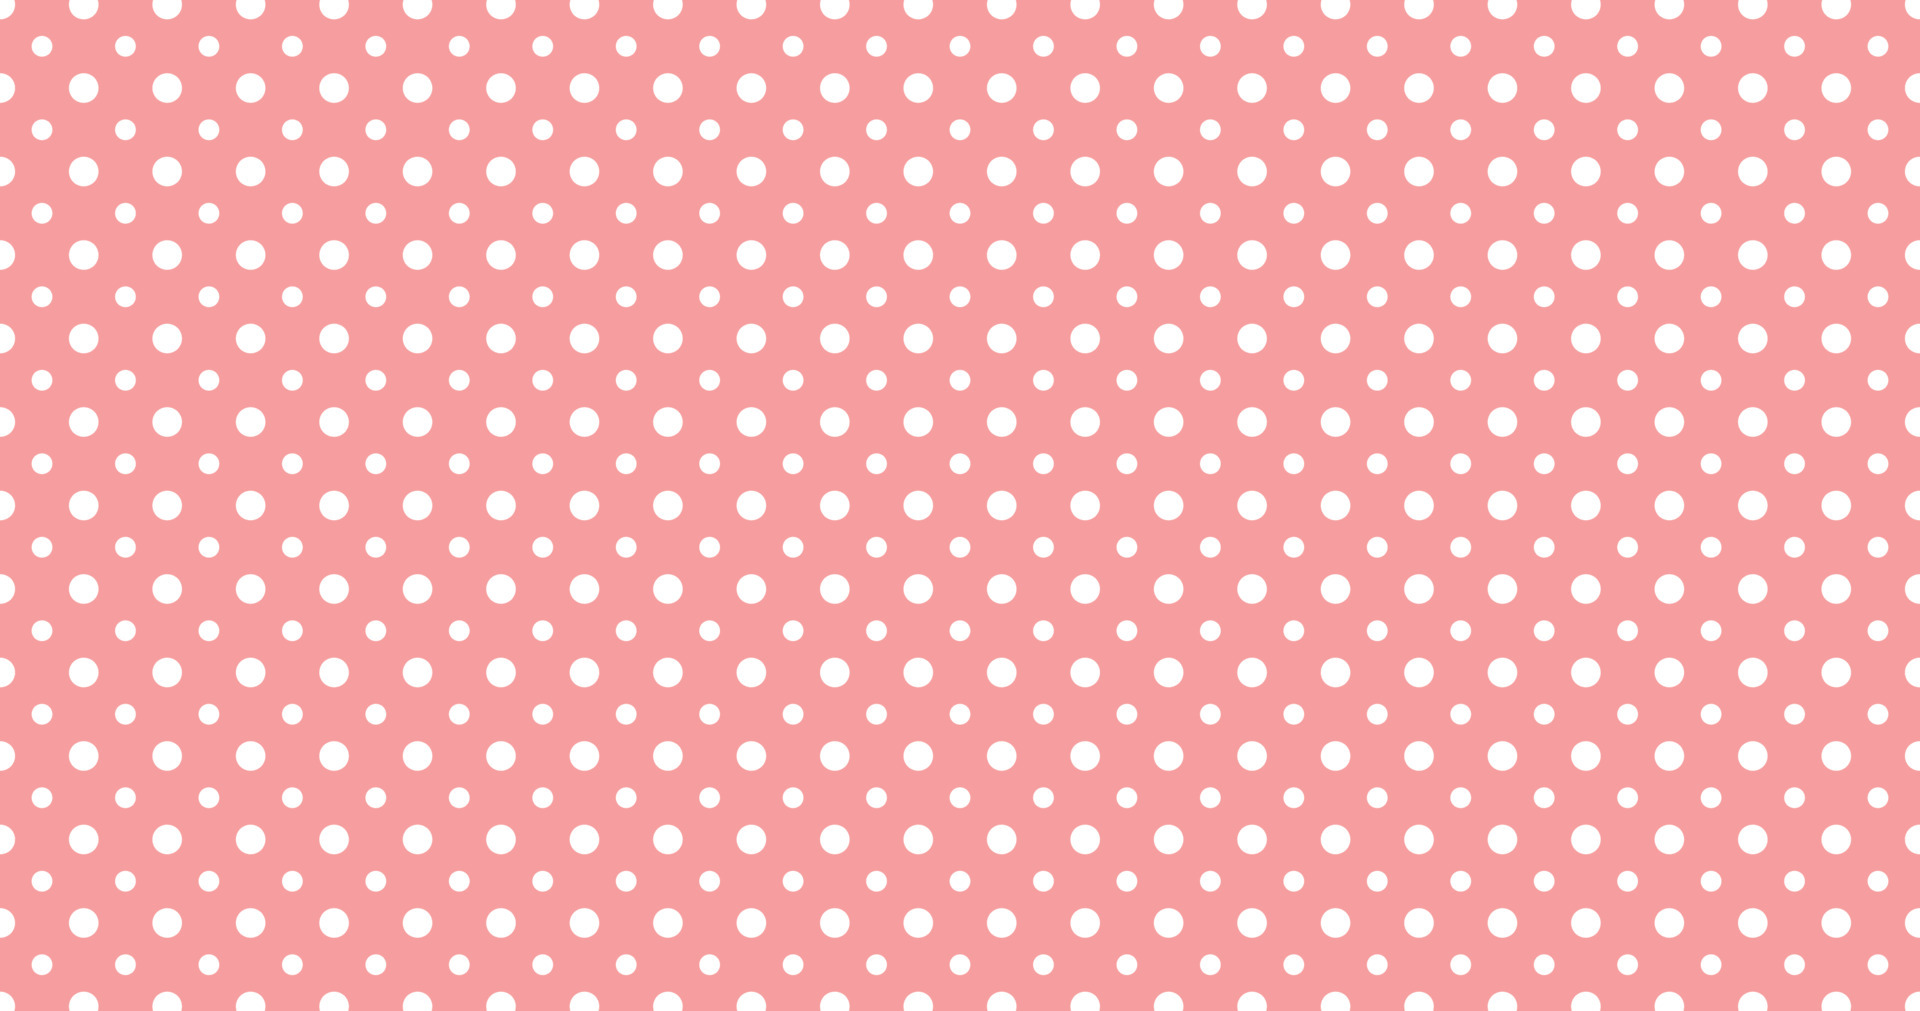 Polka dots - Niềm đam mê với chấm bi và áo phông với màu sắc khác nhau đã được biến tấu trong những hình ảnh đẹp mắt, sáng tạo và đầy màu sắc. Hãy đến và thử một số kiểu trang phục hoàn chỉnh của chúng tôi và cảm nhận sự khác biệt ngay lập tức!